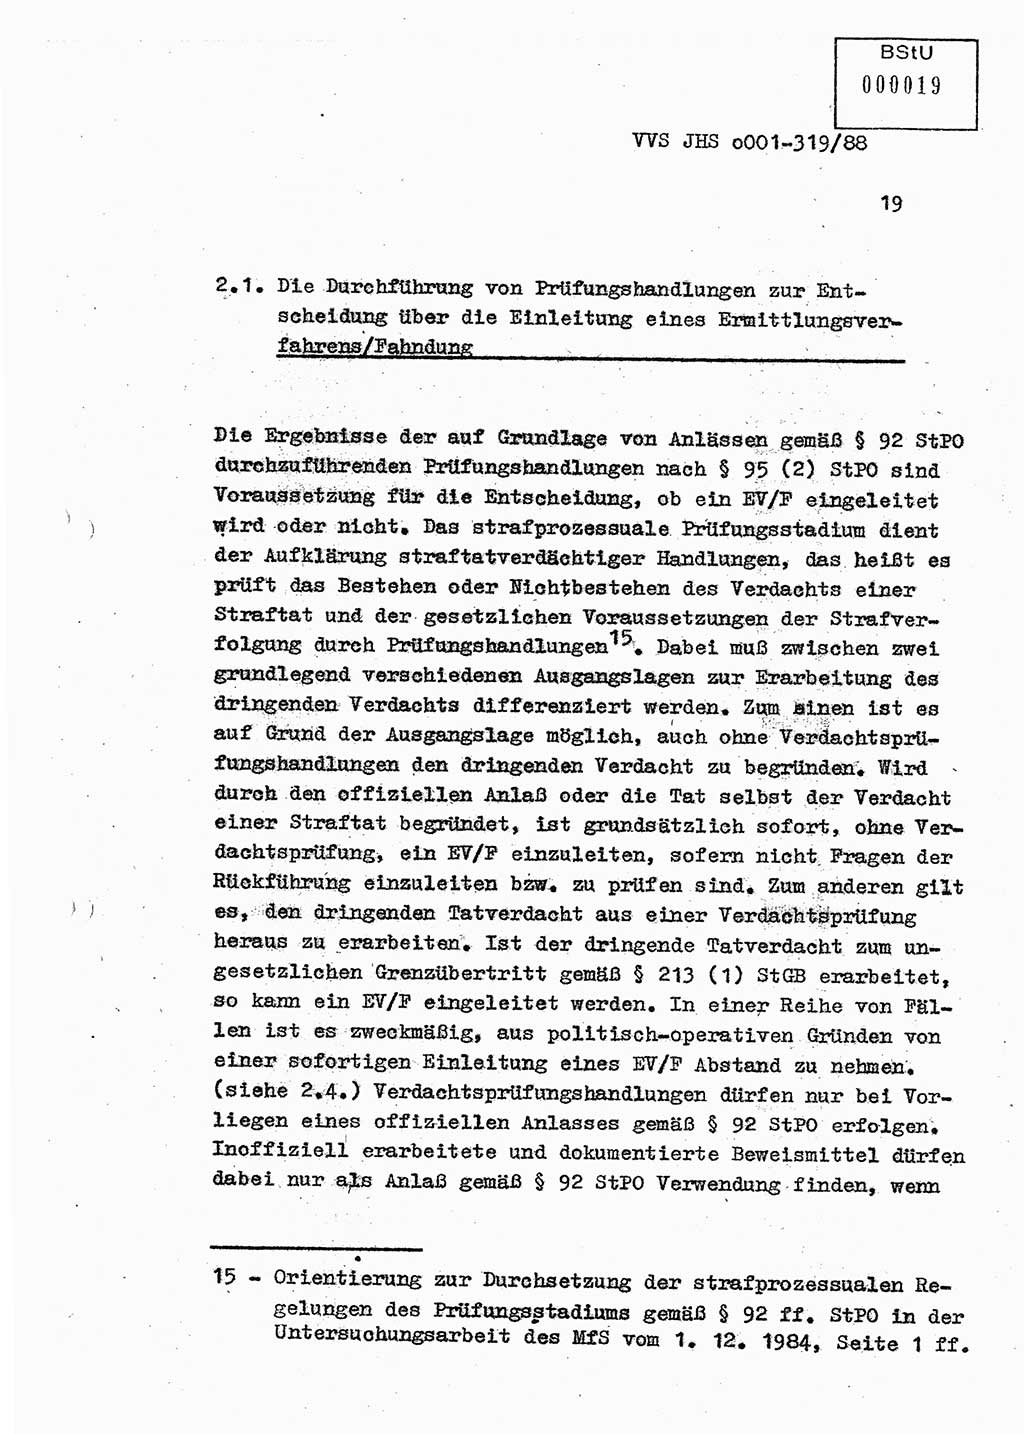 Diplomarbeit Offiziersschüler Holger Zirnstein (HA Ⅸ/9), Ministerium für Staatssicherheit (MfS) [Deutsche Demokratische Republik (DDR)], Juristische Hochschule (JHS), Vertrauliche Verschlußsache (VVS) o001-319/88, Potsdam 1988, Blatt 19 (Dipl.-Arb. MfS DDR JHS VVS o001-319/88 1988, Bl. 19)